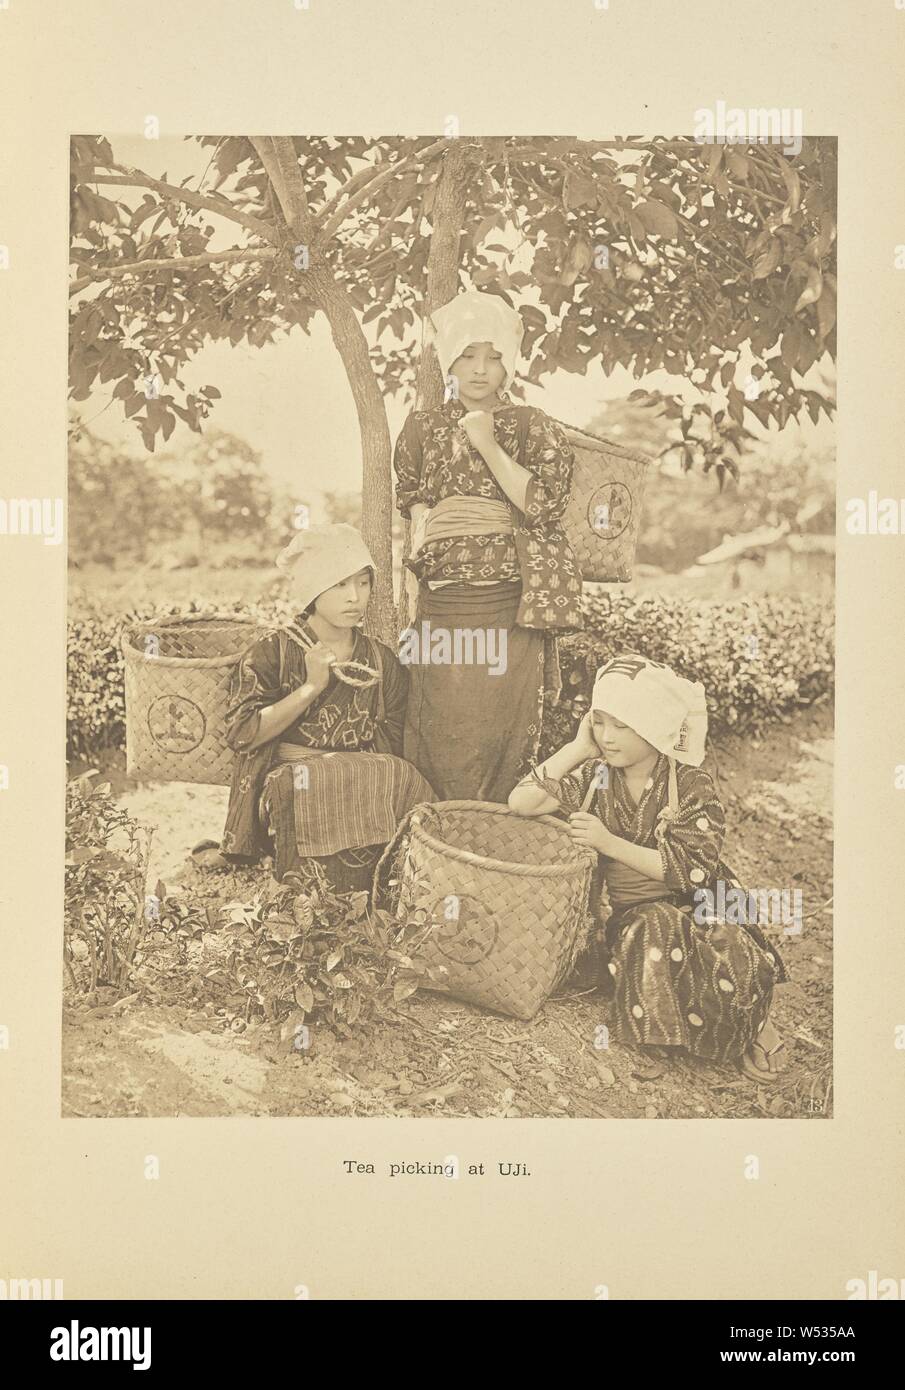 Tea Picking at Uji, Kazumasa Ogawa (Japanese, 1860 - 1929), Tokyo, Japan, 1893–1895, Collotype, 26 × 20.3 cm (10 1/4 × 8 in Stock Photo